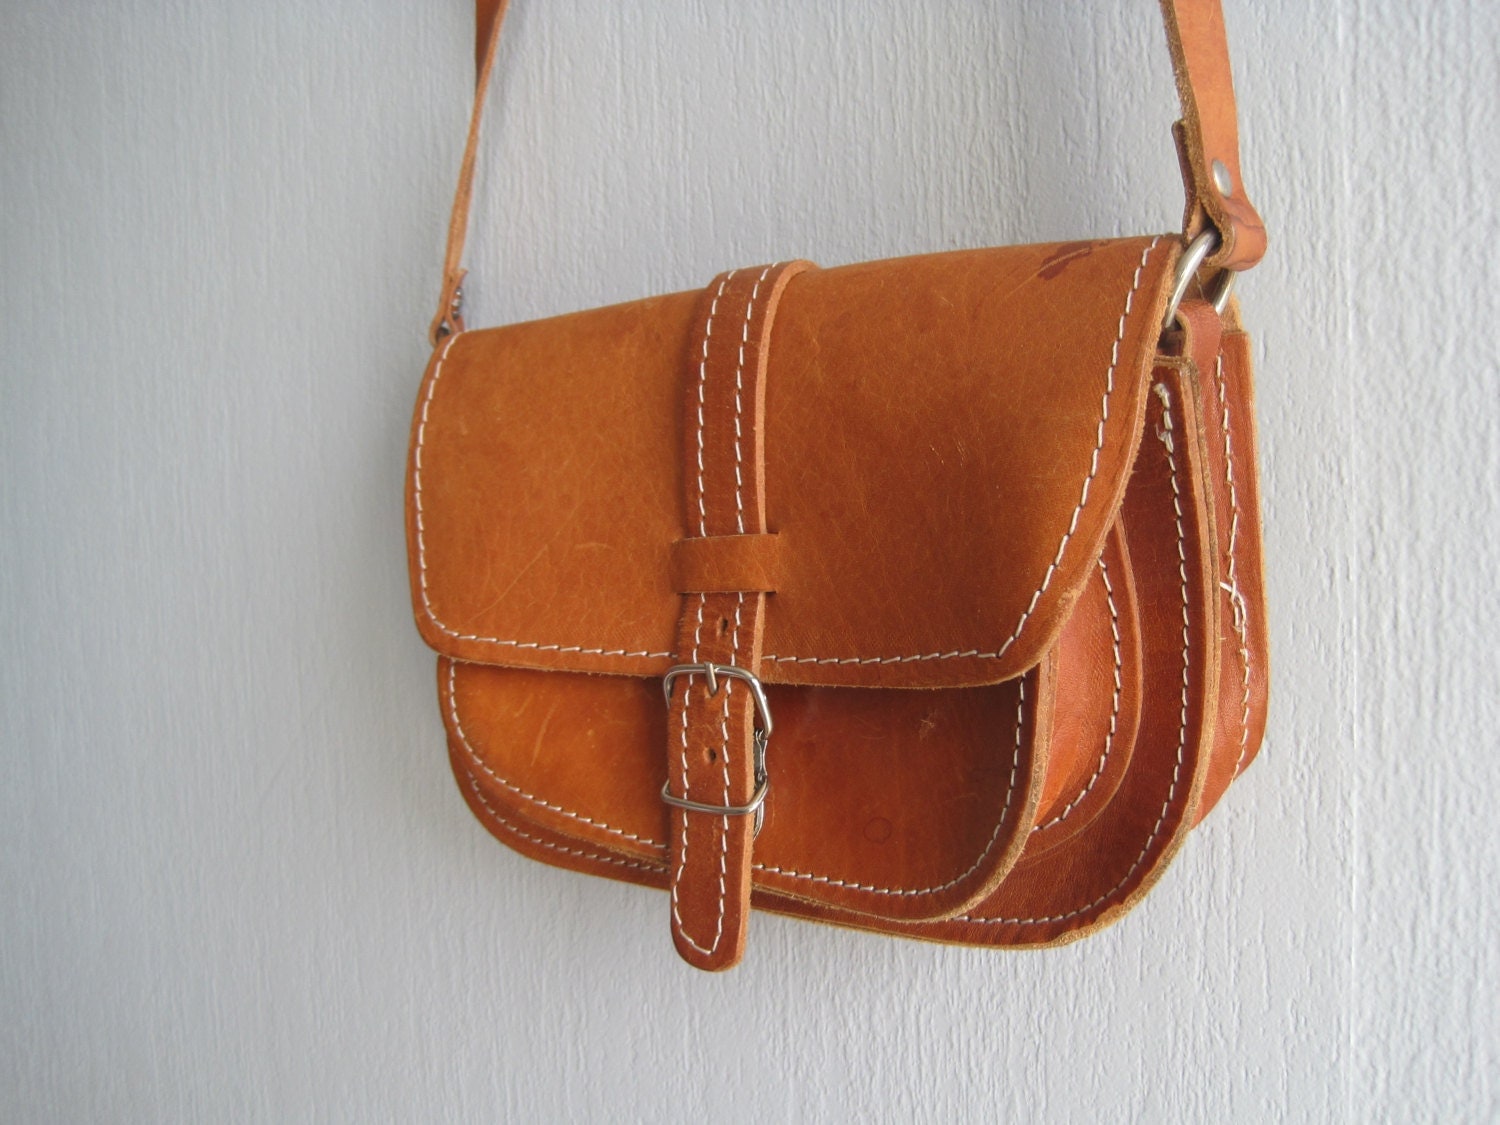 Vintage leather bag leather saddle bag small crossbody bag